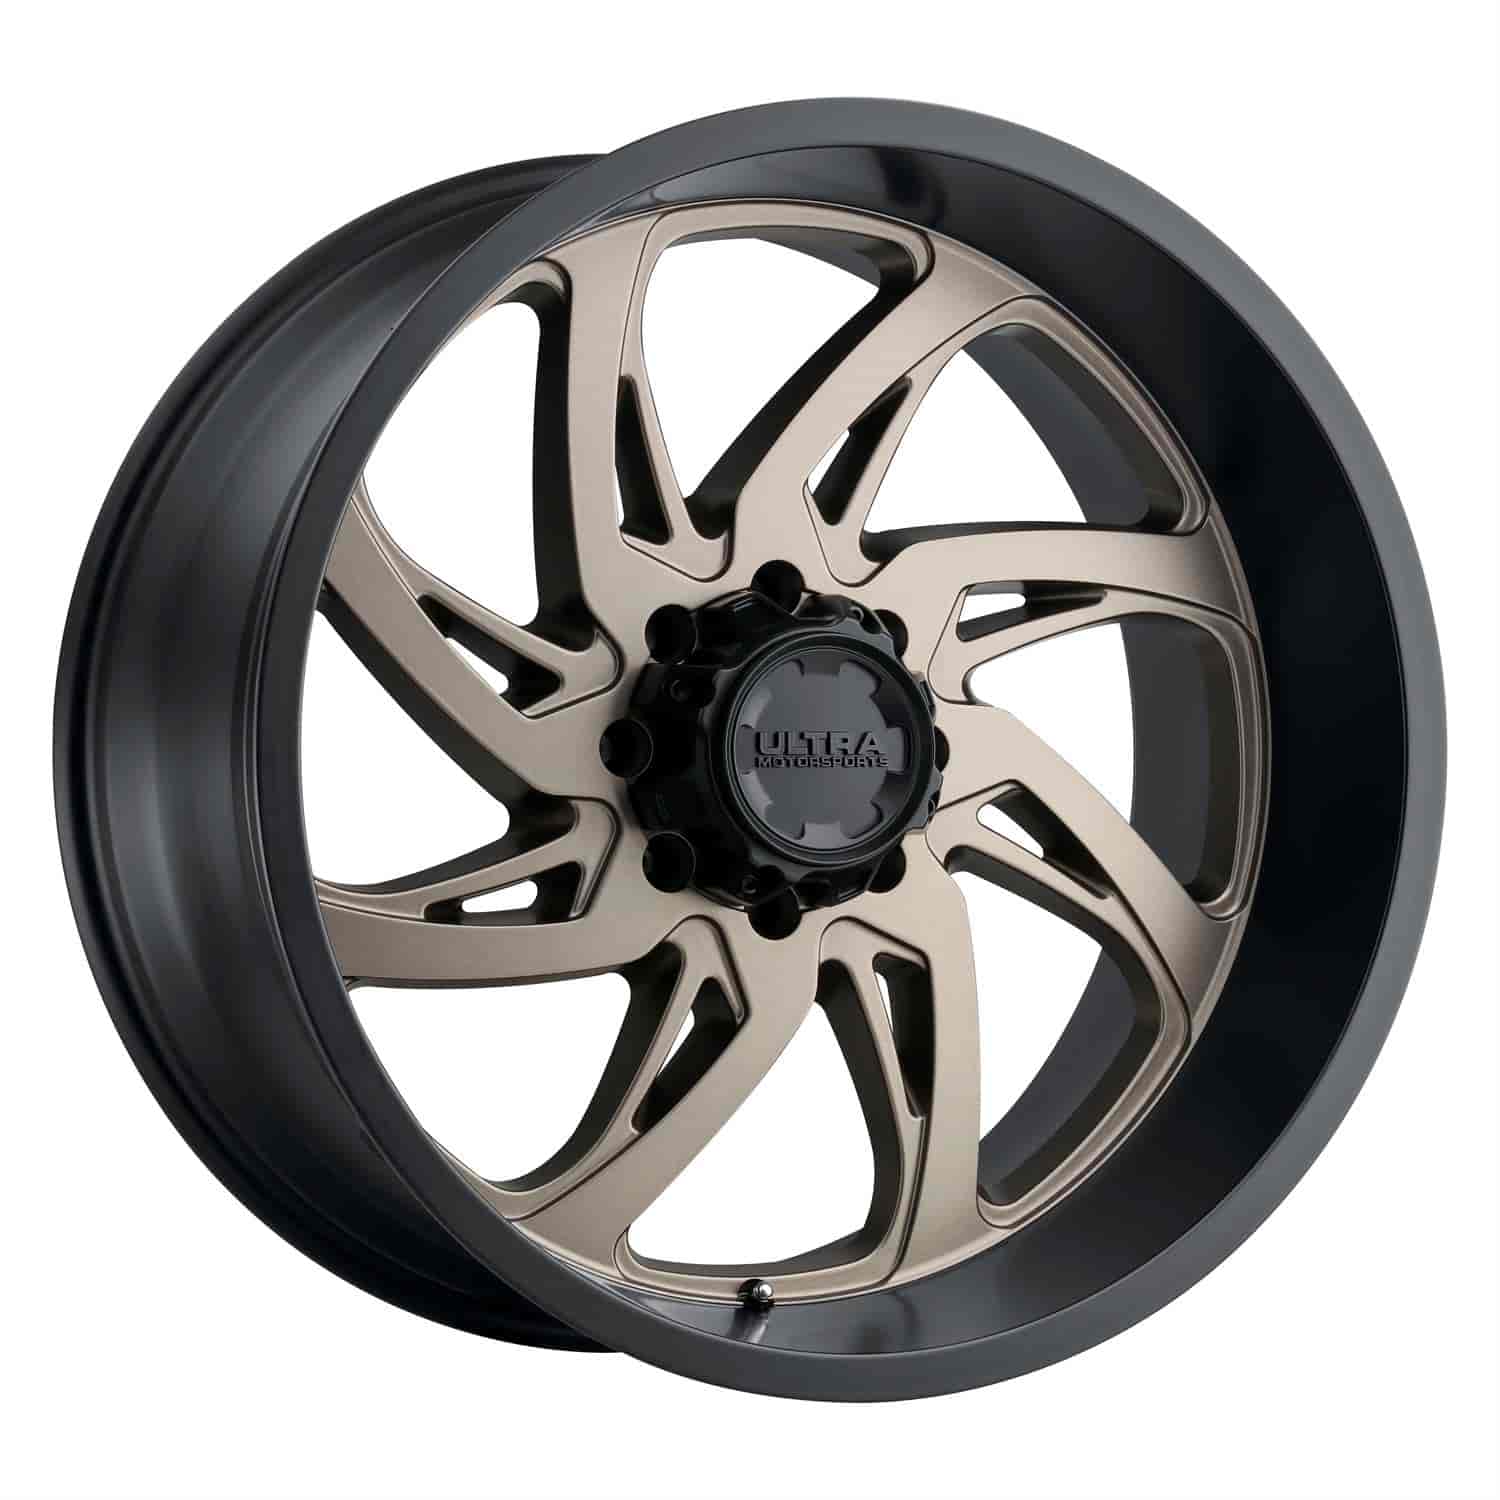 230-Series Villain Wheel, Size: 20x10", Bolt Pattern: 6x5.5"/6x135 mm [Dark Satin Bronze w/Satin Black Lip]